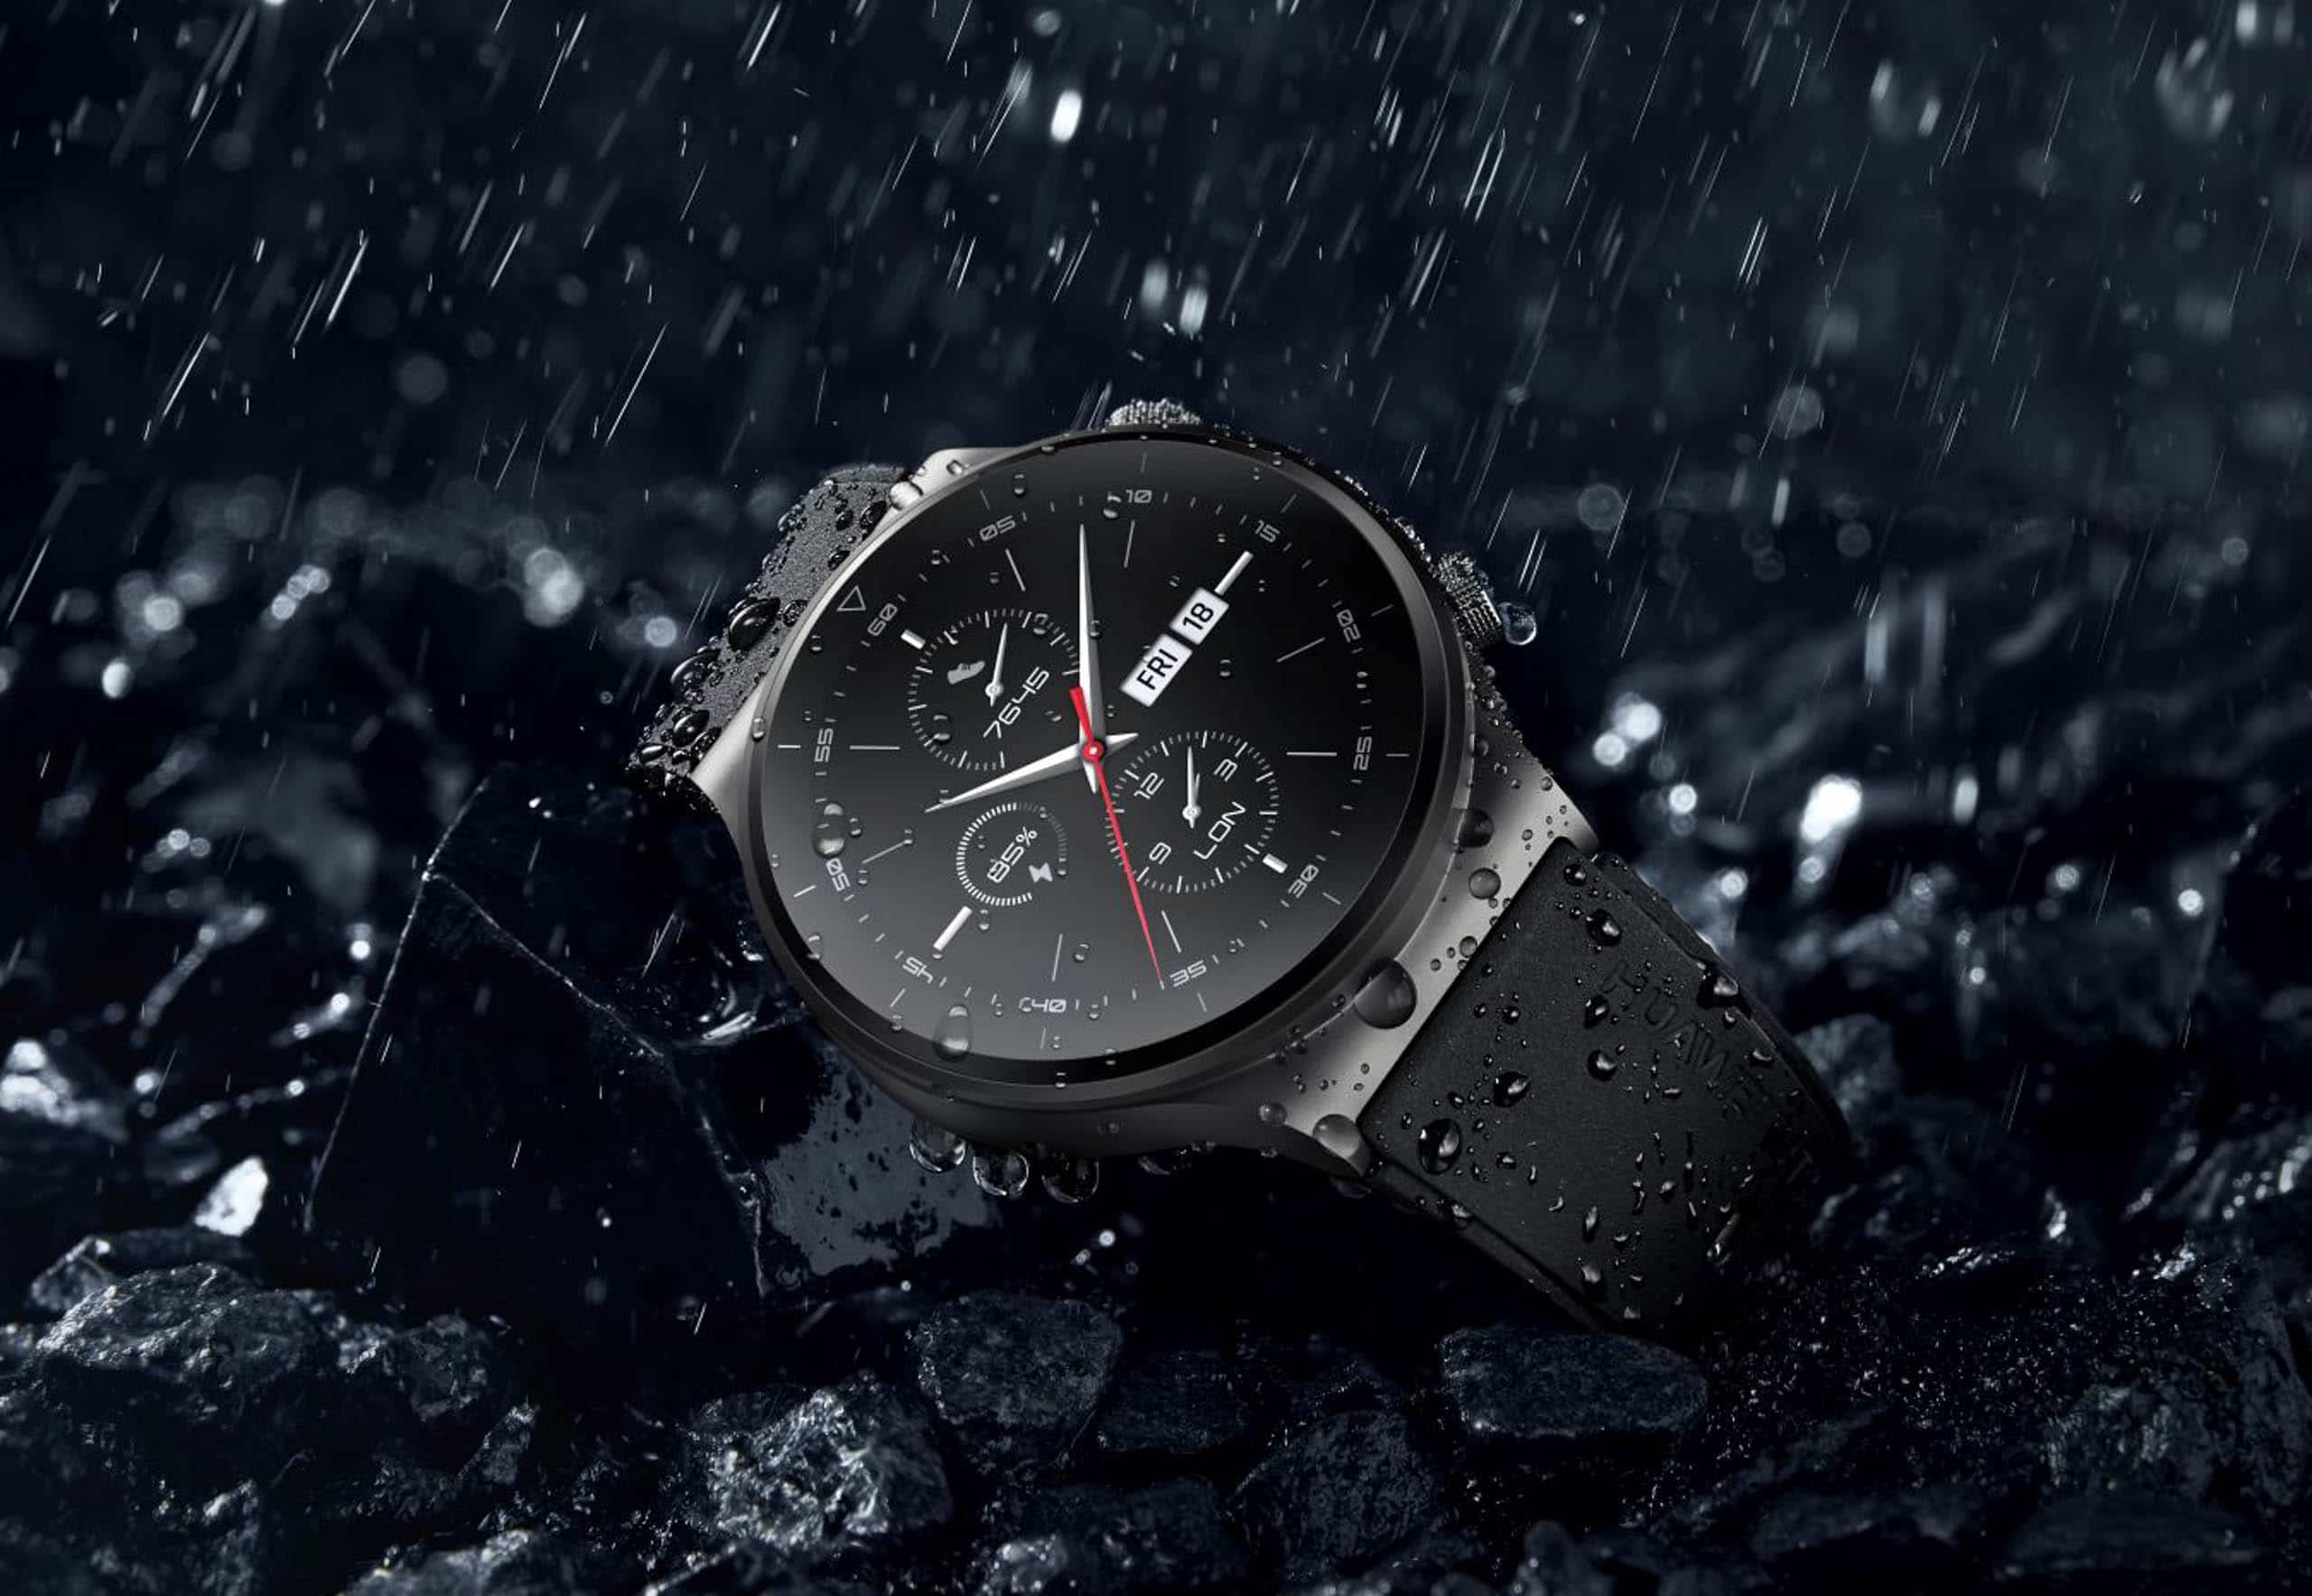 HUAWEI ra mắt đồng hồ thông minh Watch GT 2 Pro tại Việt Nam